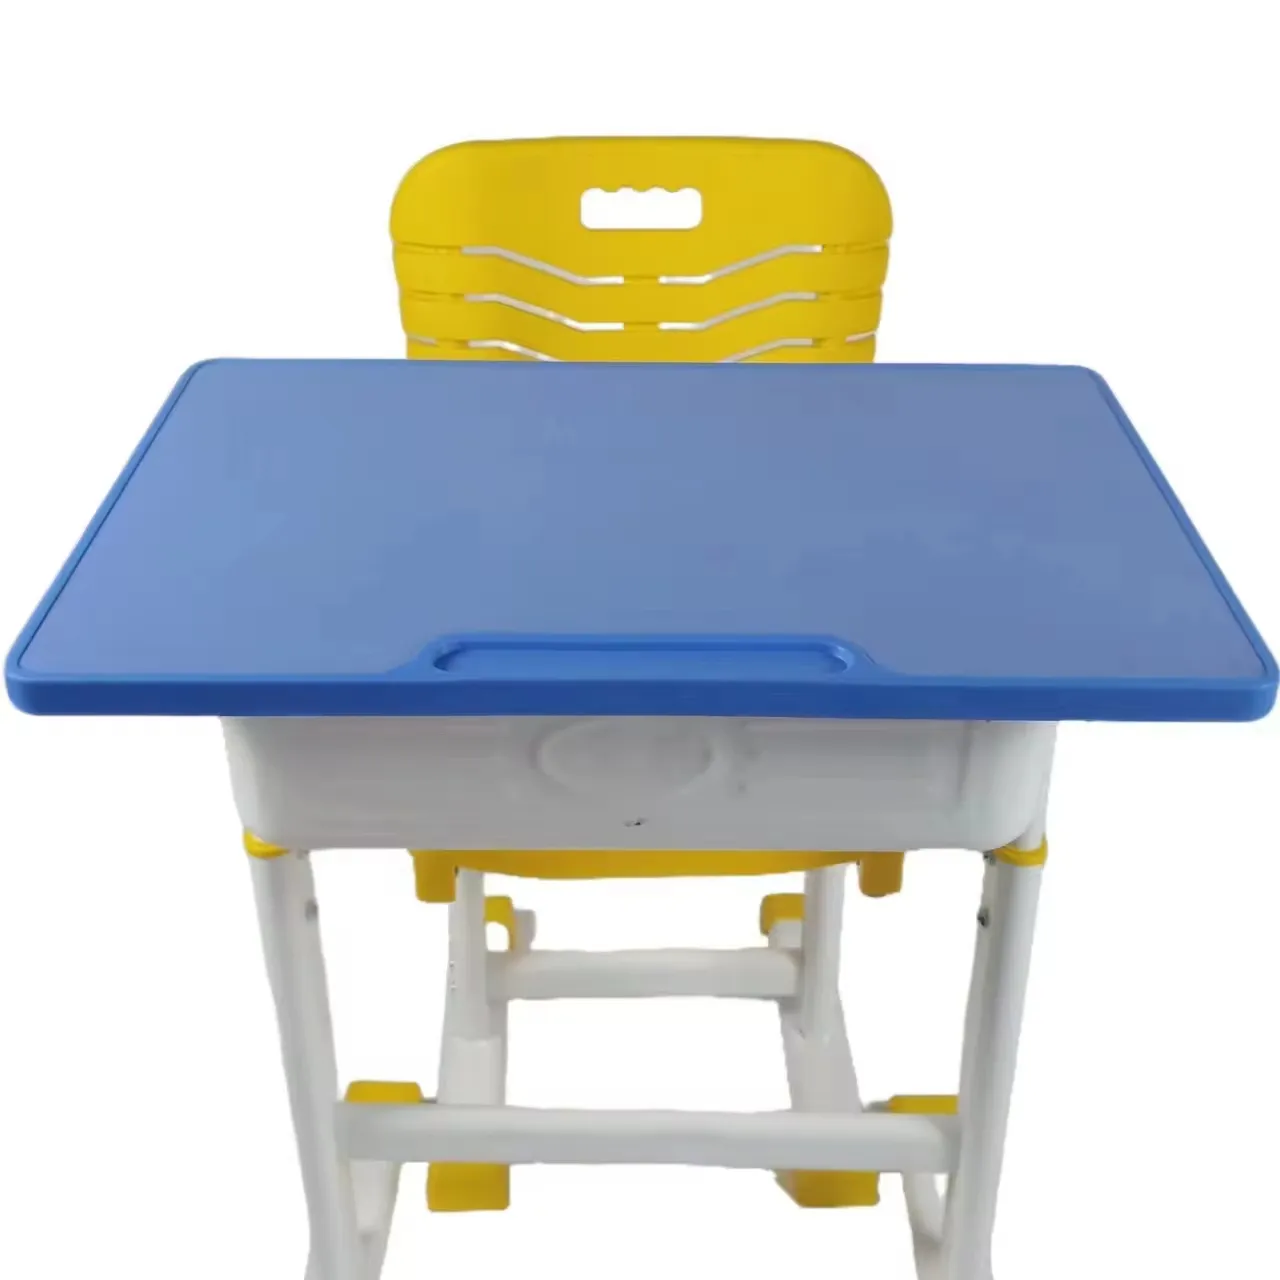 أثاث مدرسي، طاولة مدرسية بمقعد فردي وكرسي، طاولة مدرسية للطلاب، طاولة مدرسية بلاستيكية مع ارتفاع قابل للتعديل وكرسي